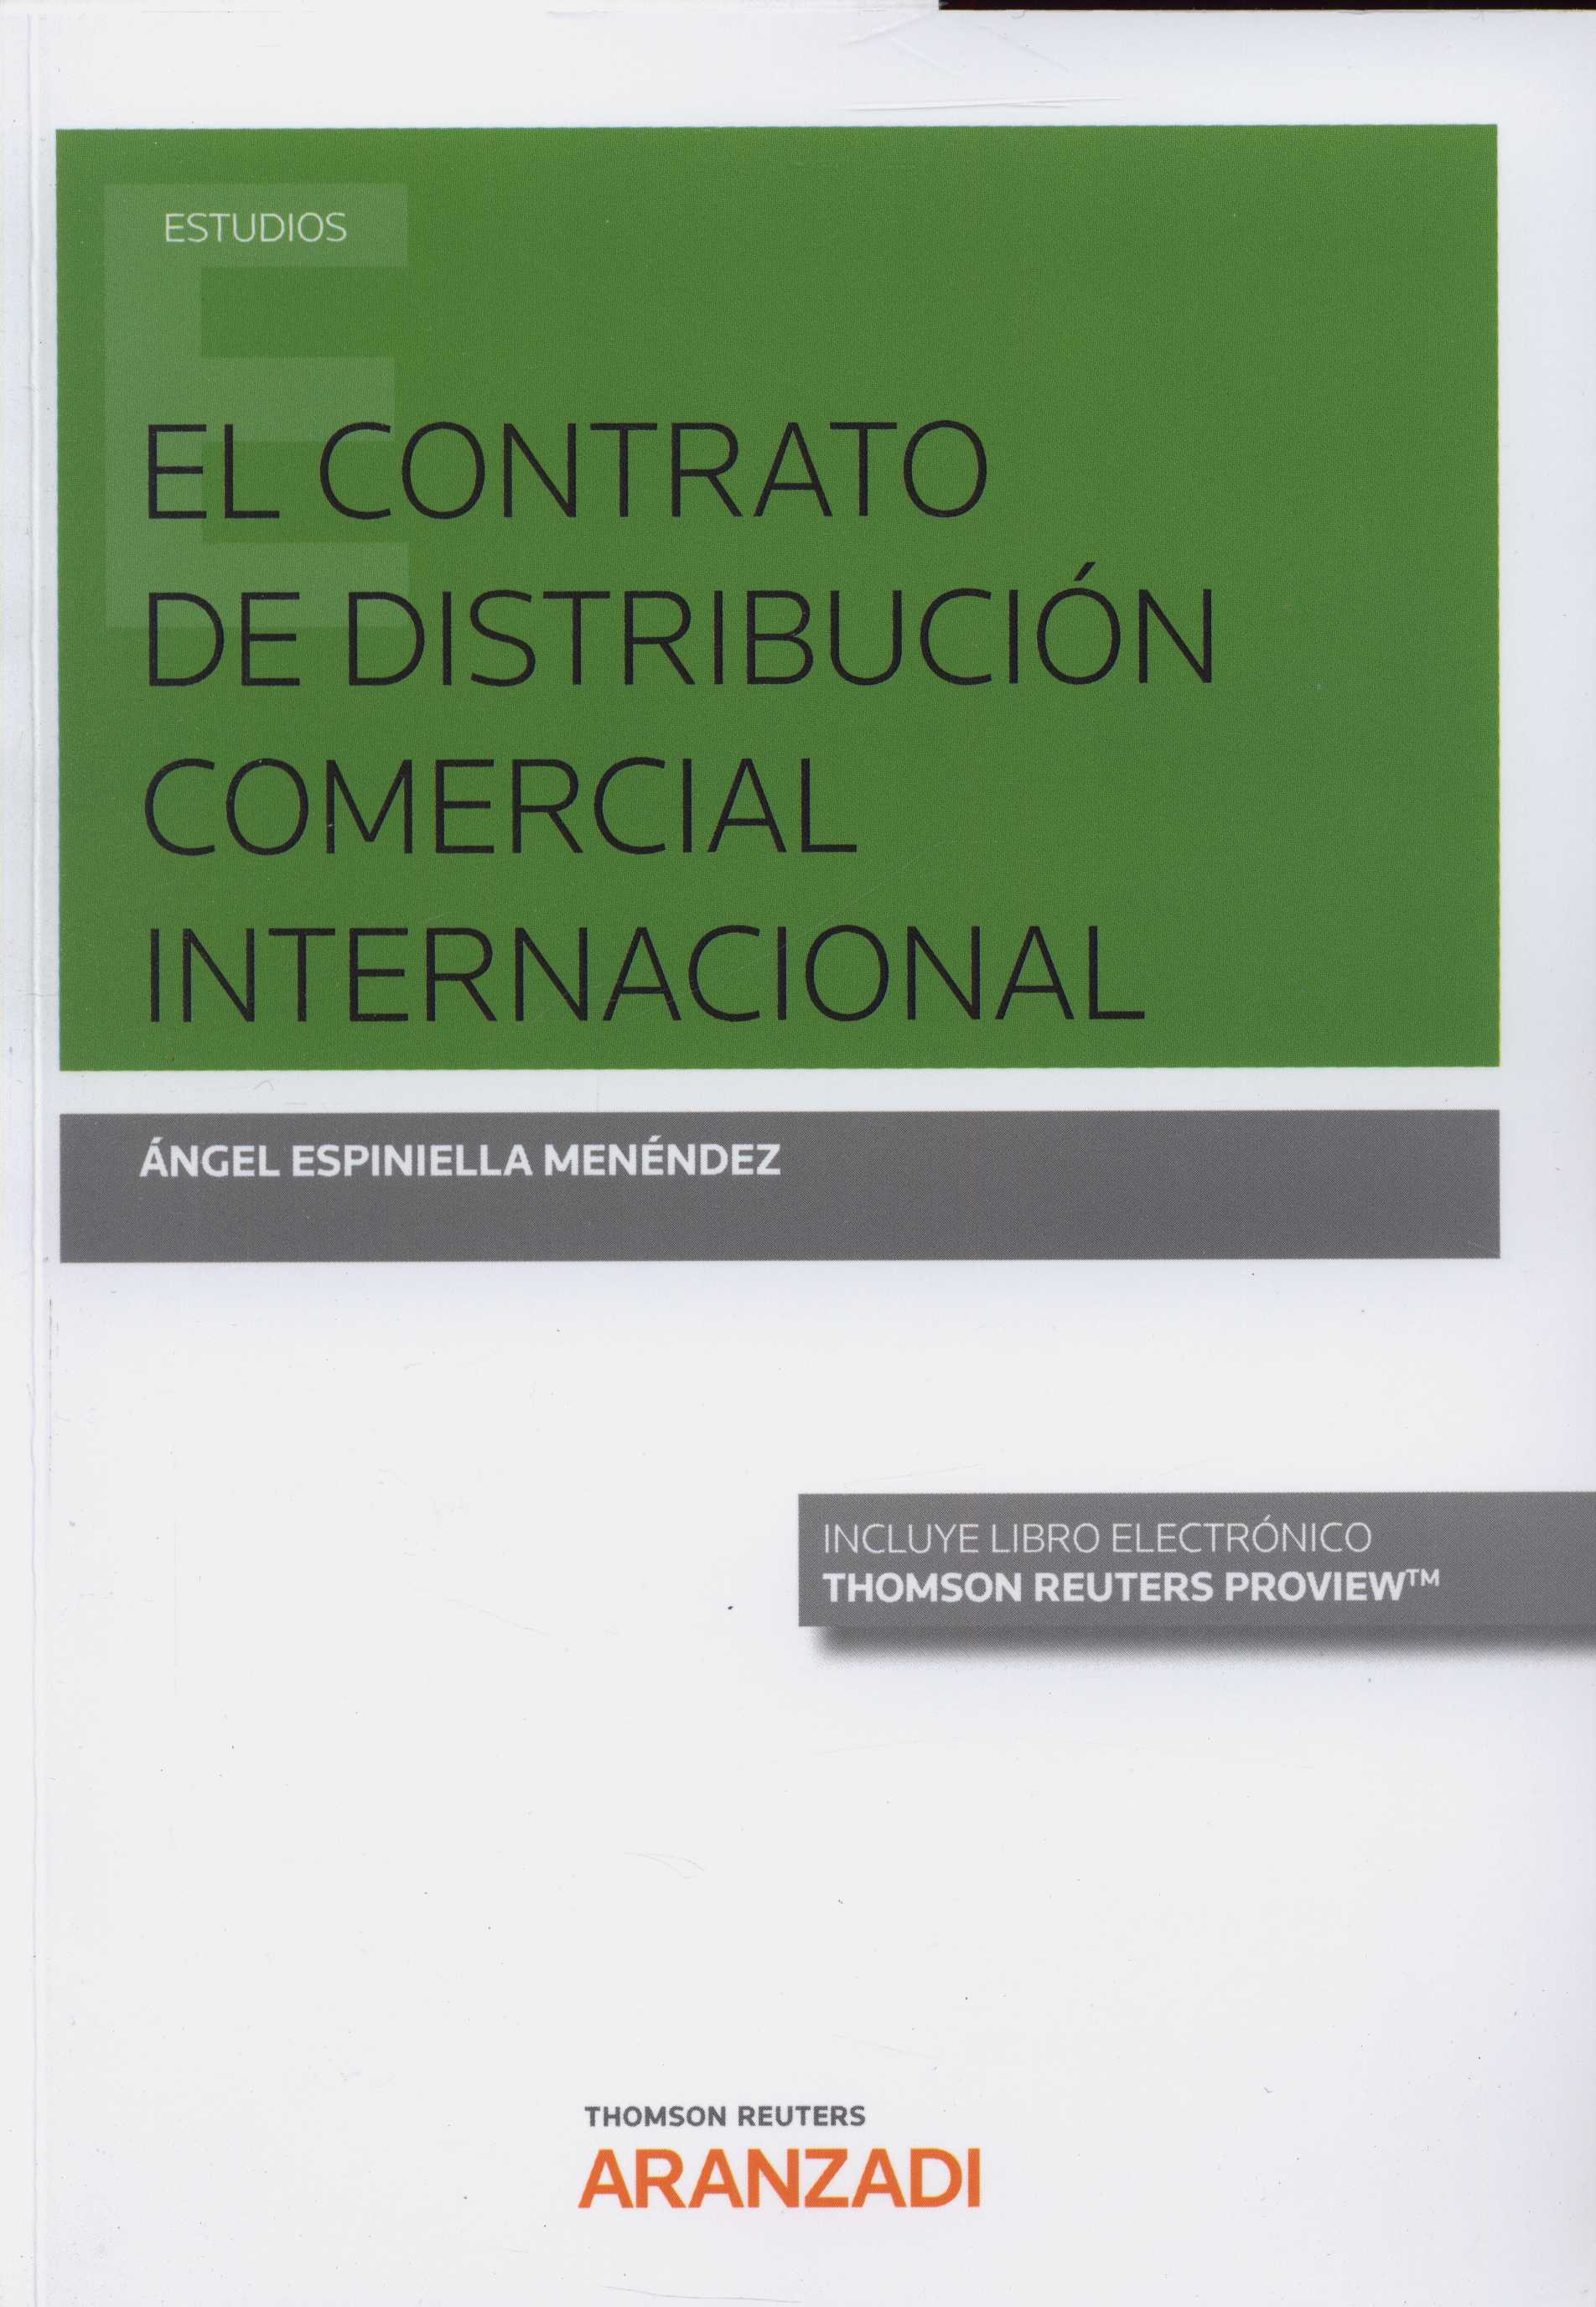 Imagen de portada del libro El contrato de distribución comercial internacional